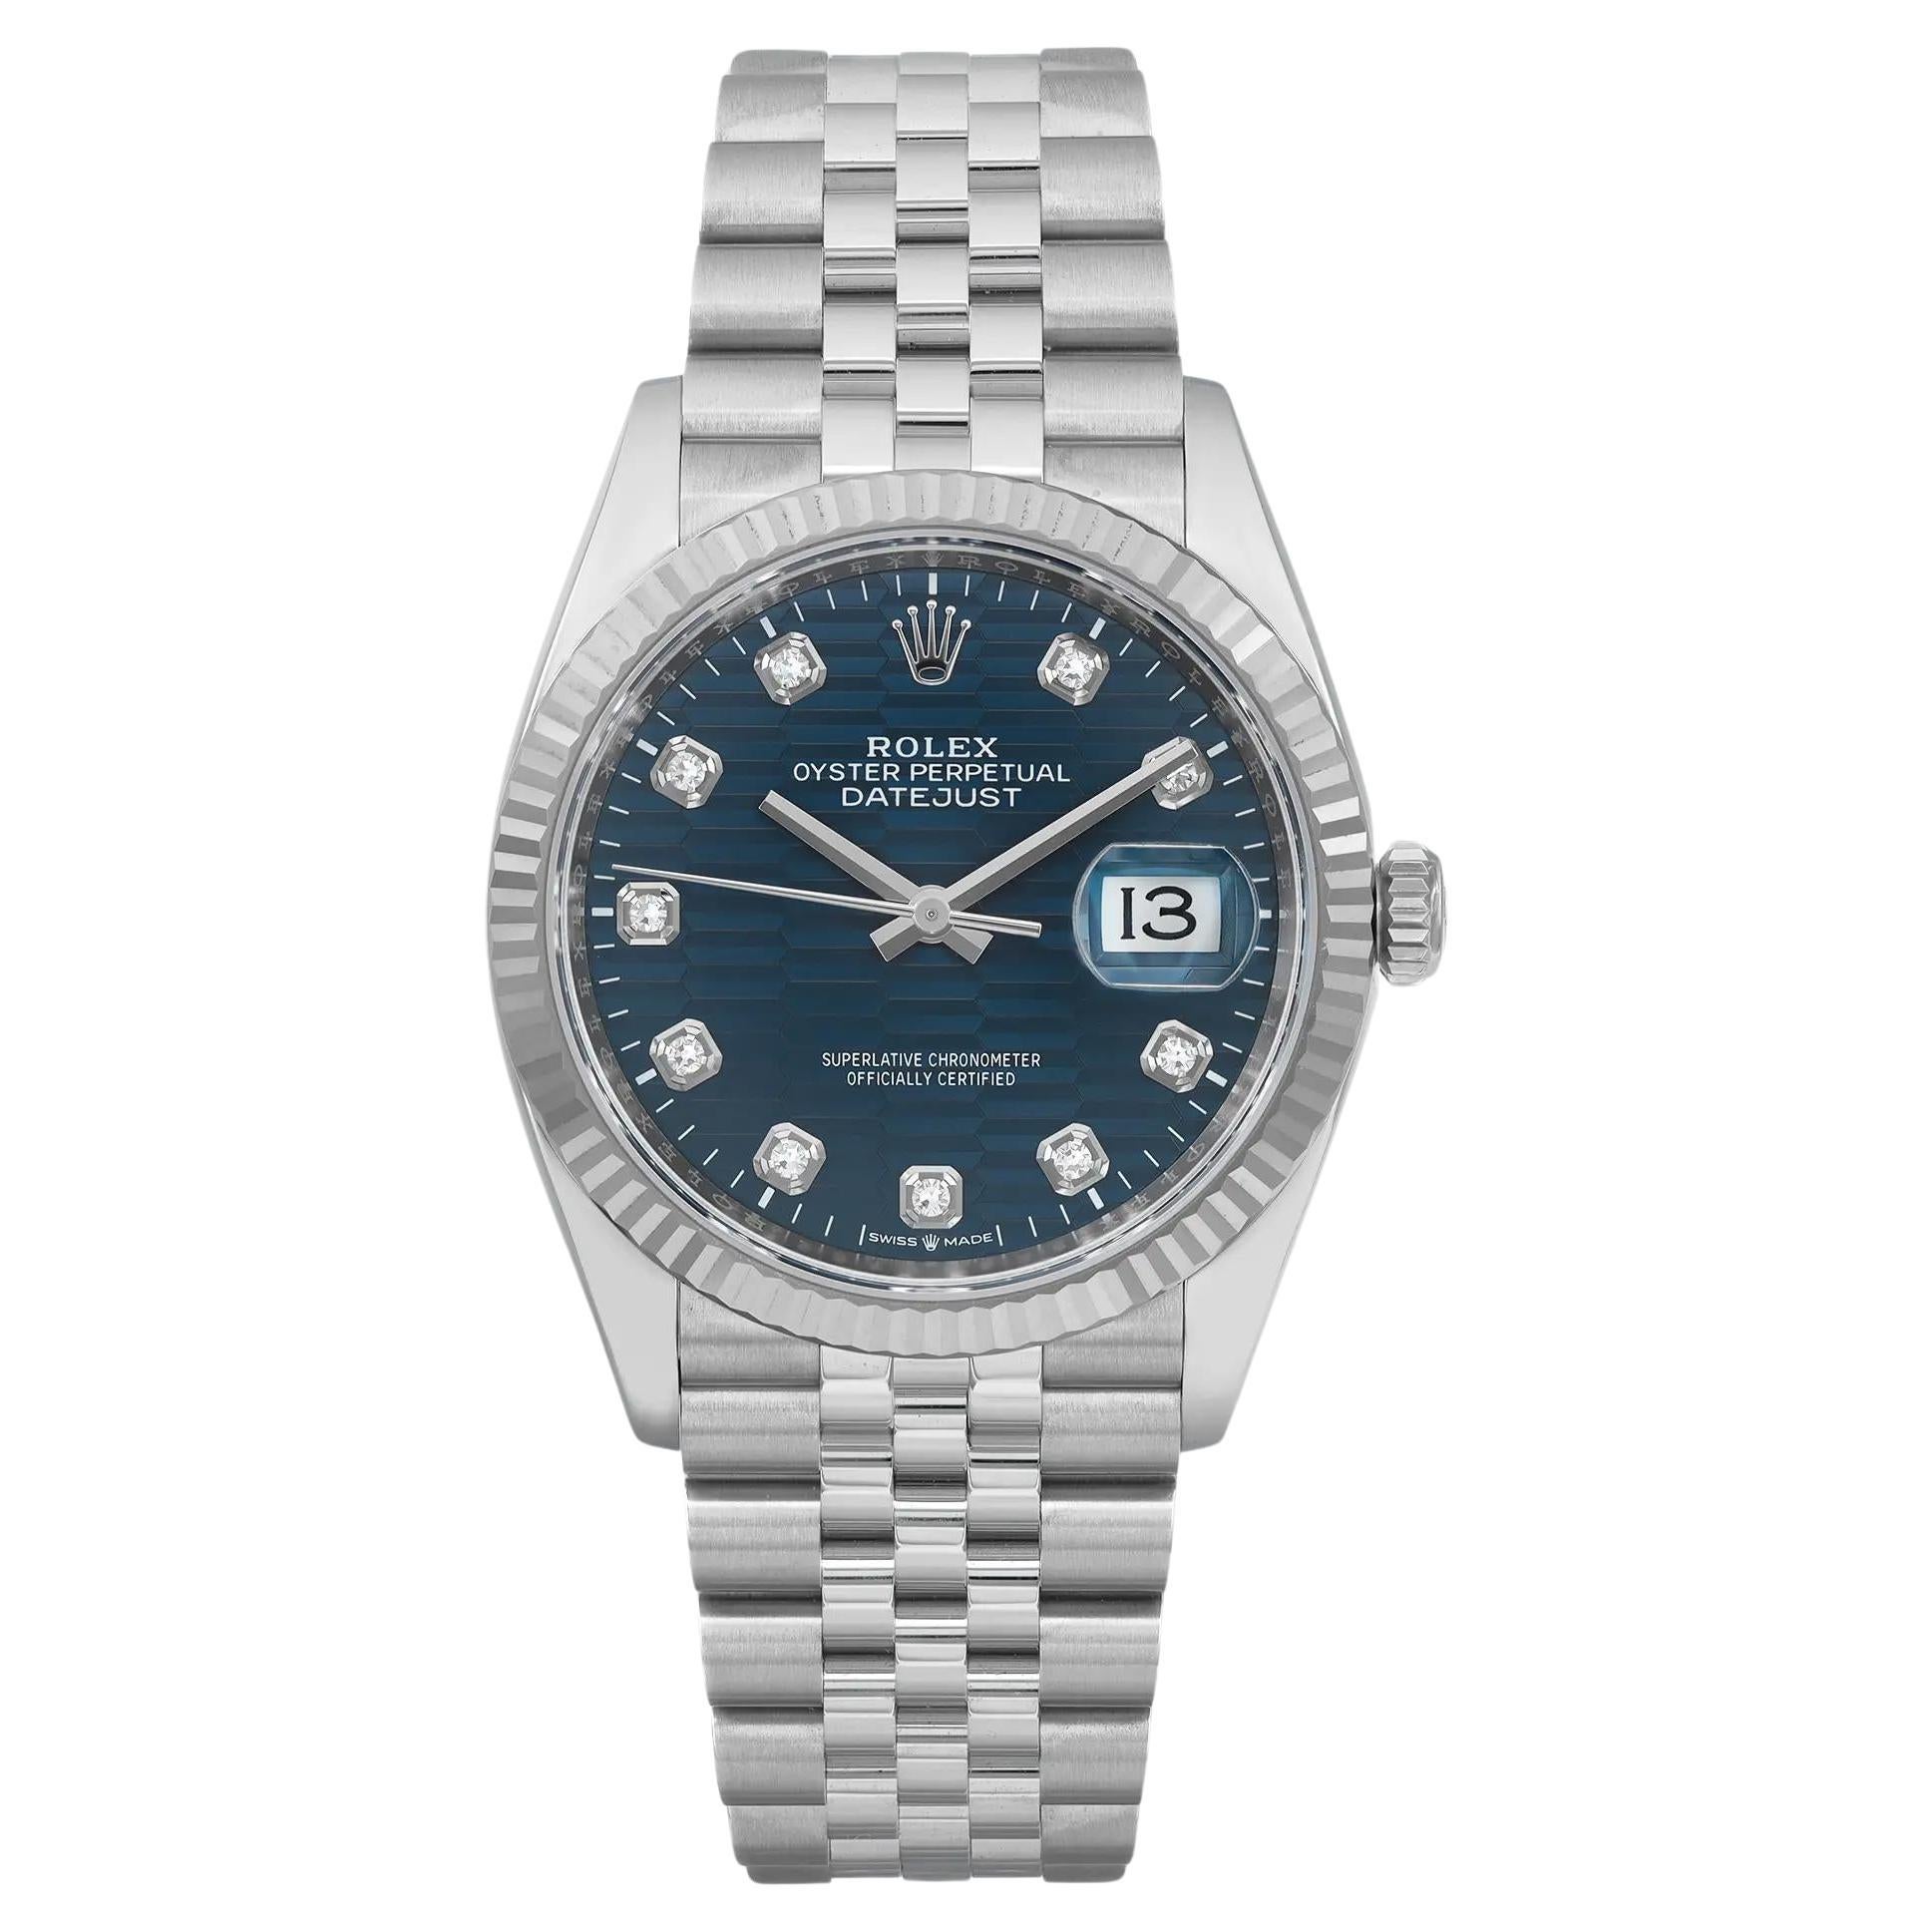 NEW Rolex Datejust 36mm Jubilee Steel Blue Motif Dial Automatic Watch 126234